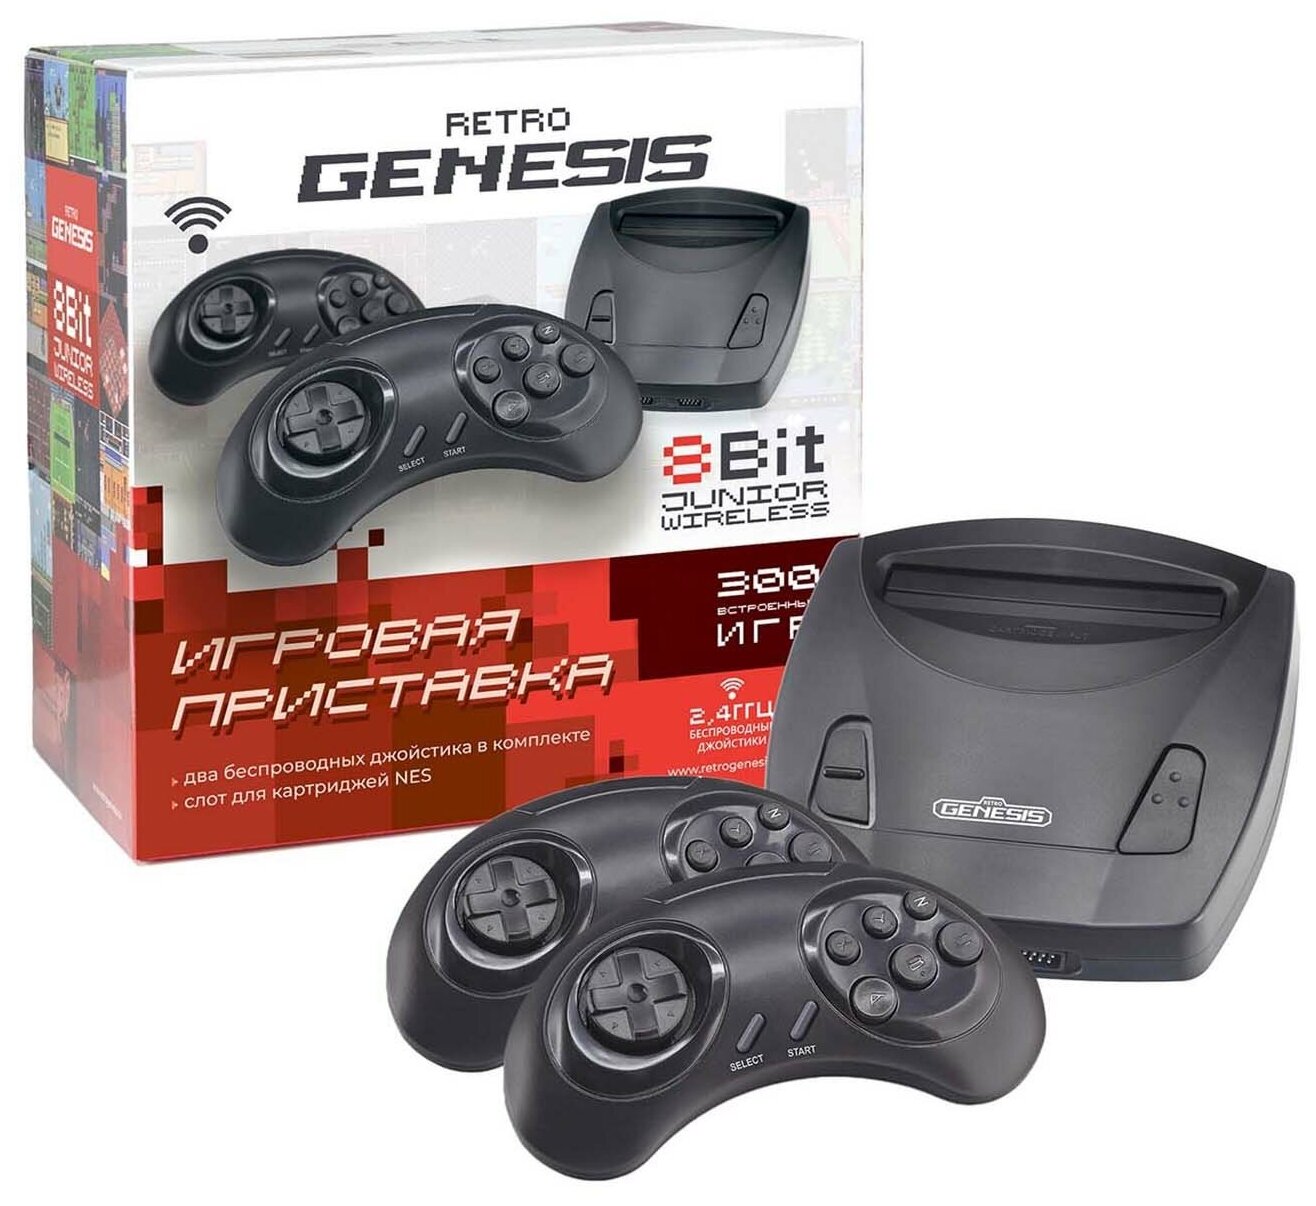 Игровая приставка Retro Genesis Junior Wireless (300игр 8 bit)+ 2 беспроводных джойстика